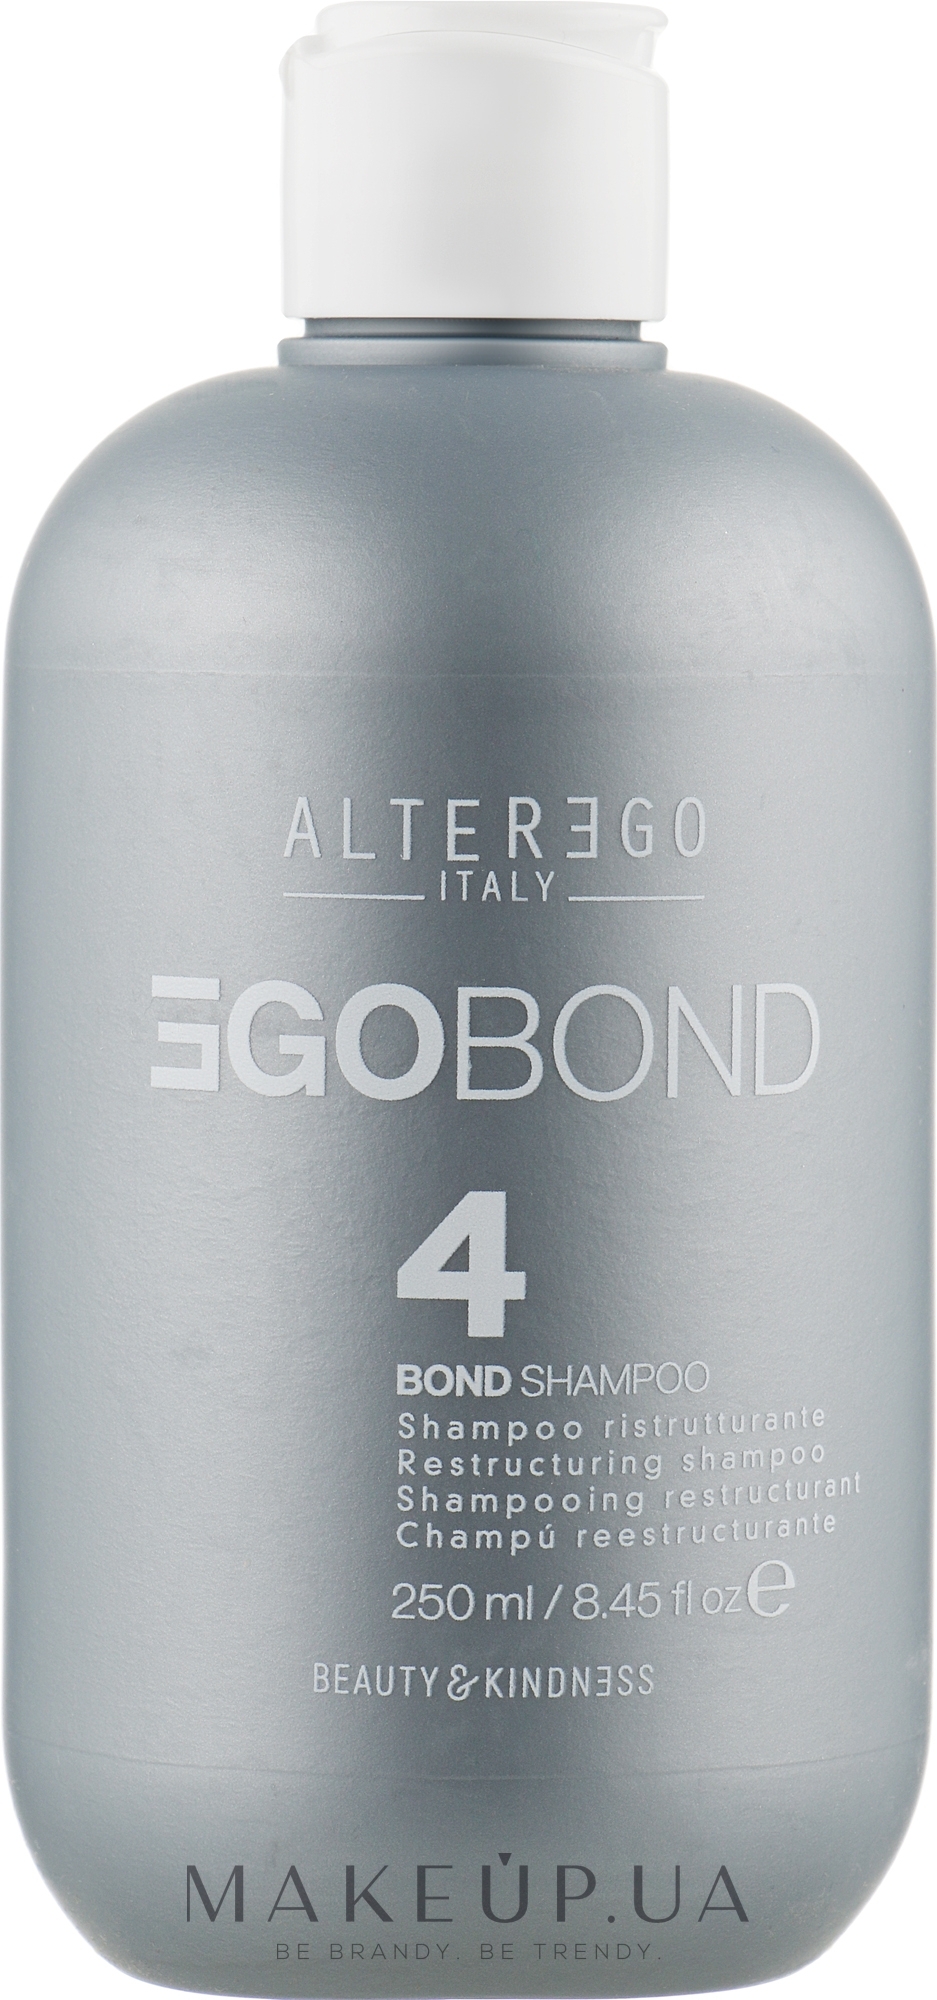 Реструктурирующий шампунь для восстановления и питания волос - Alter Ego Egobond 4 Bond Shampoo — фото 250ml